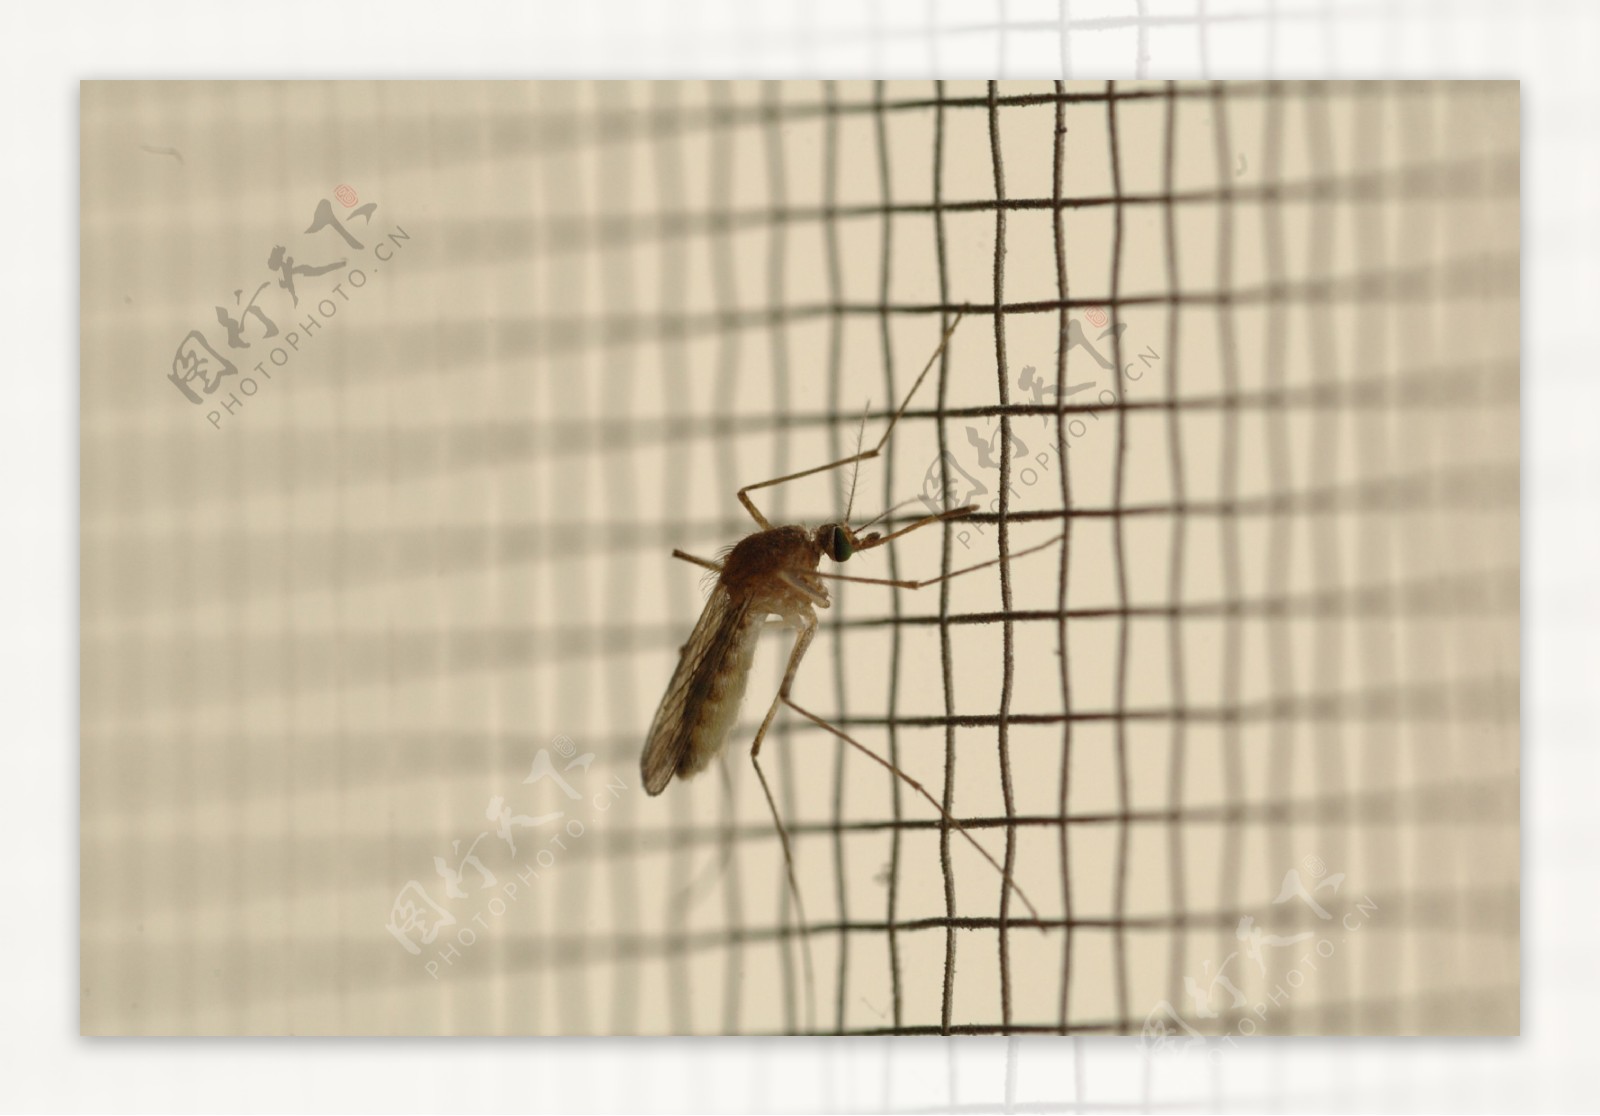 静止的蚊子图片